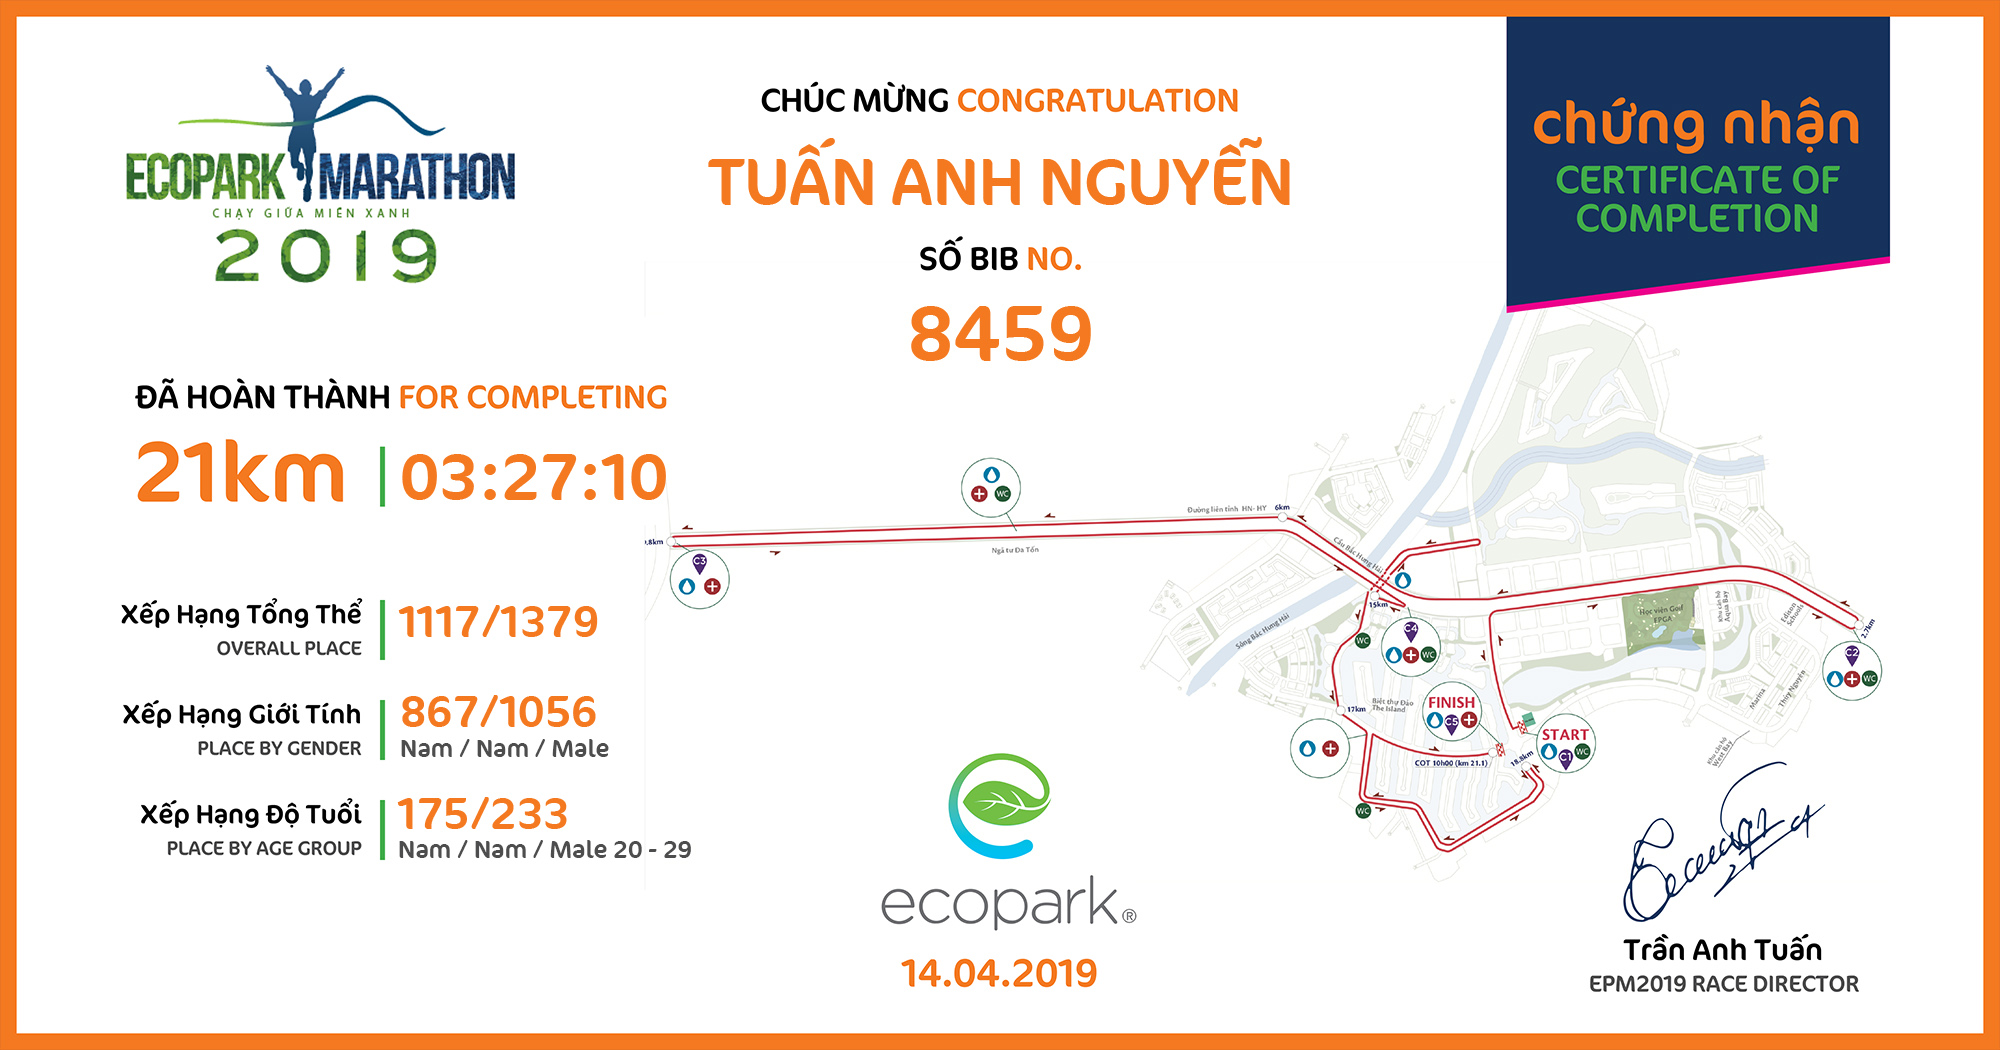 8459 - Tuấn Anh Nguyễn